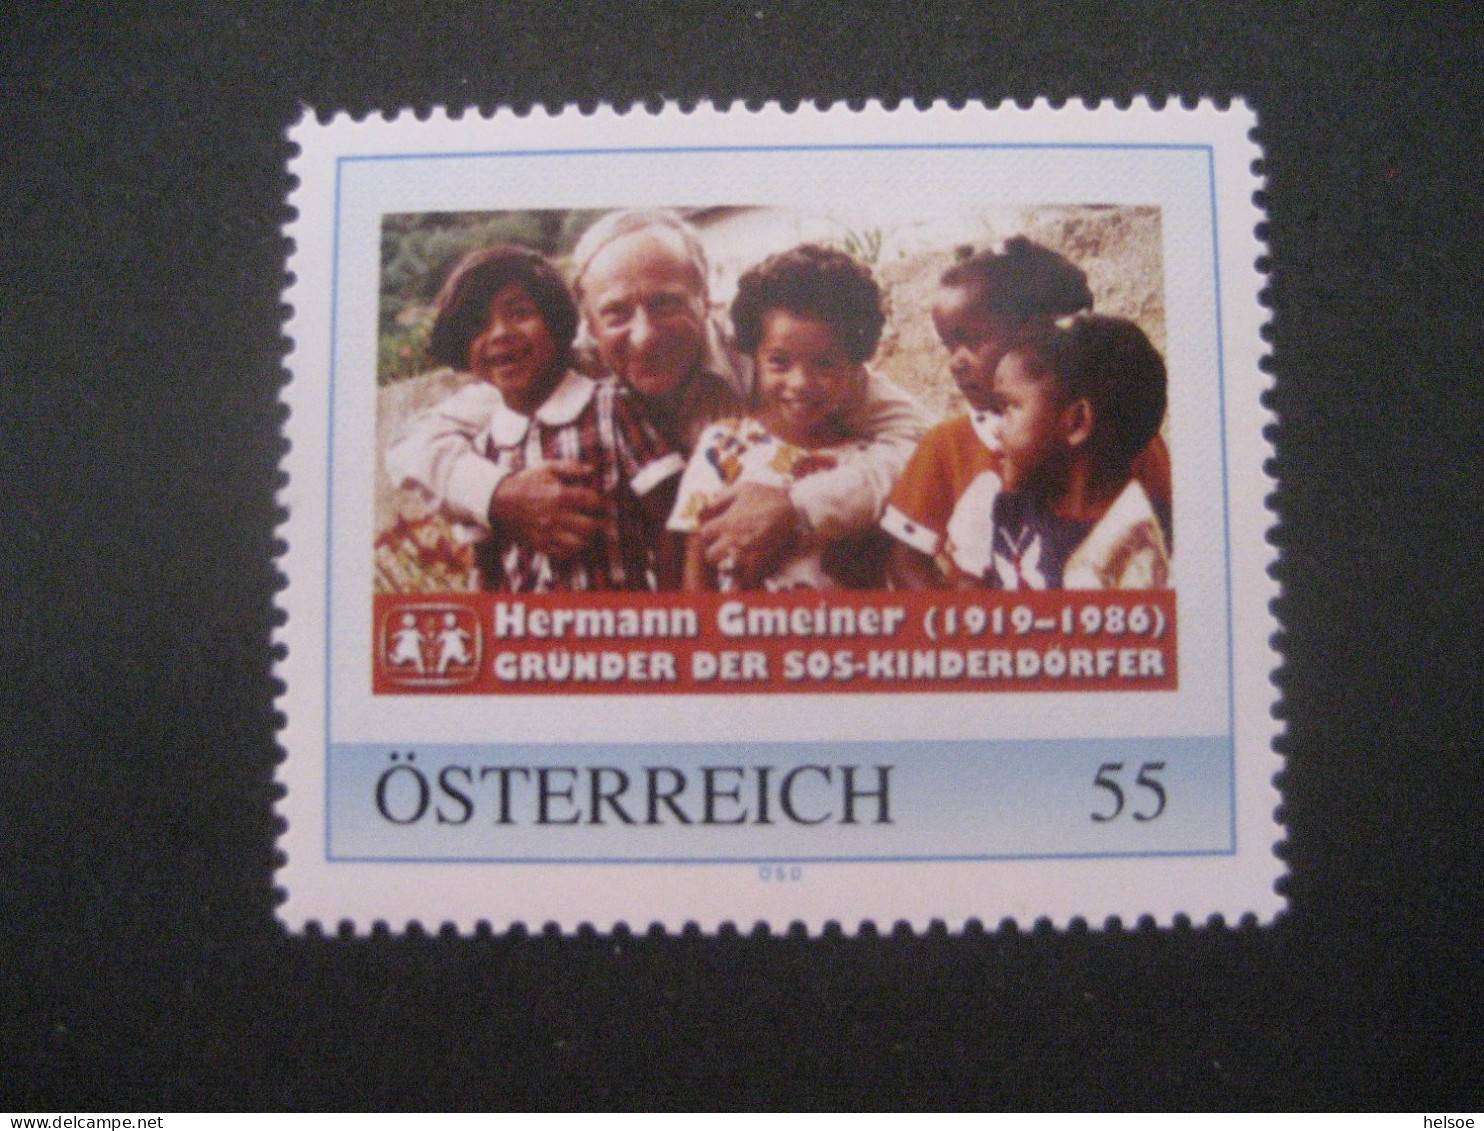 Österreich- PM 8010339, Hermann Gmeiner - Gründer Der SOS Kinderdörfer ** - Persoonlijke Postzegels